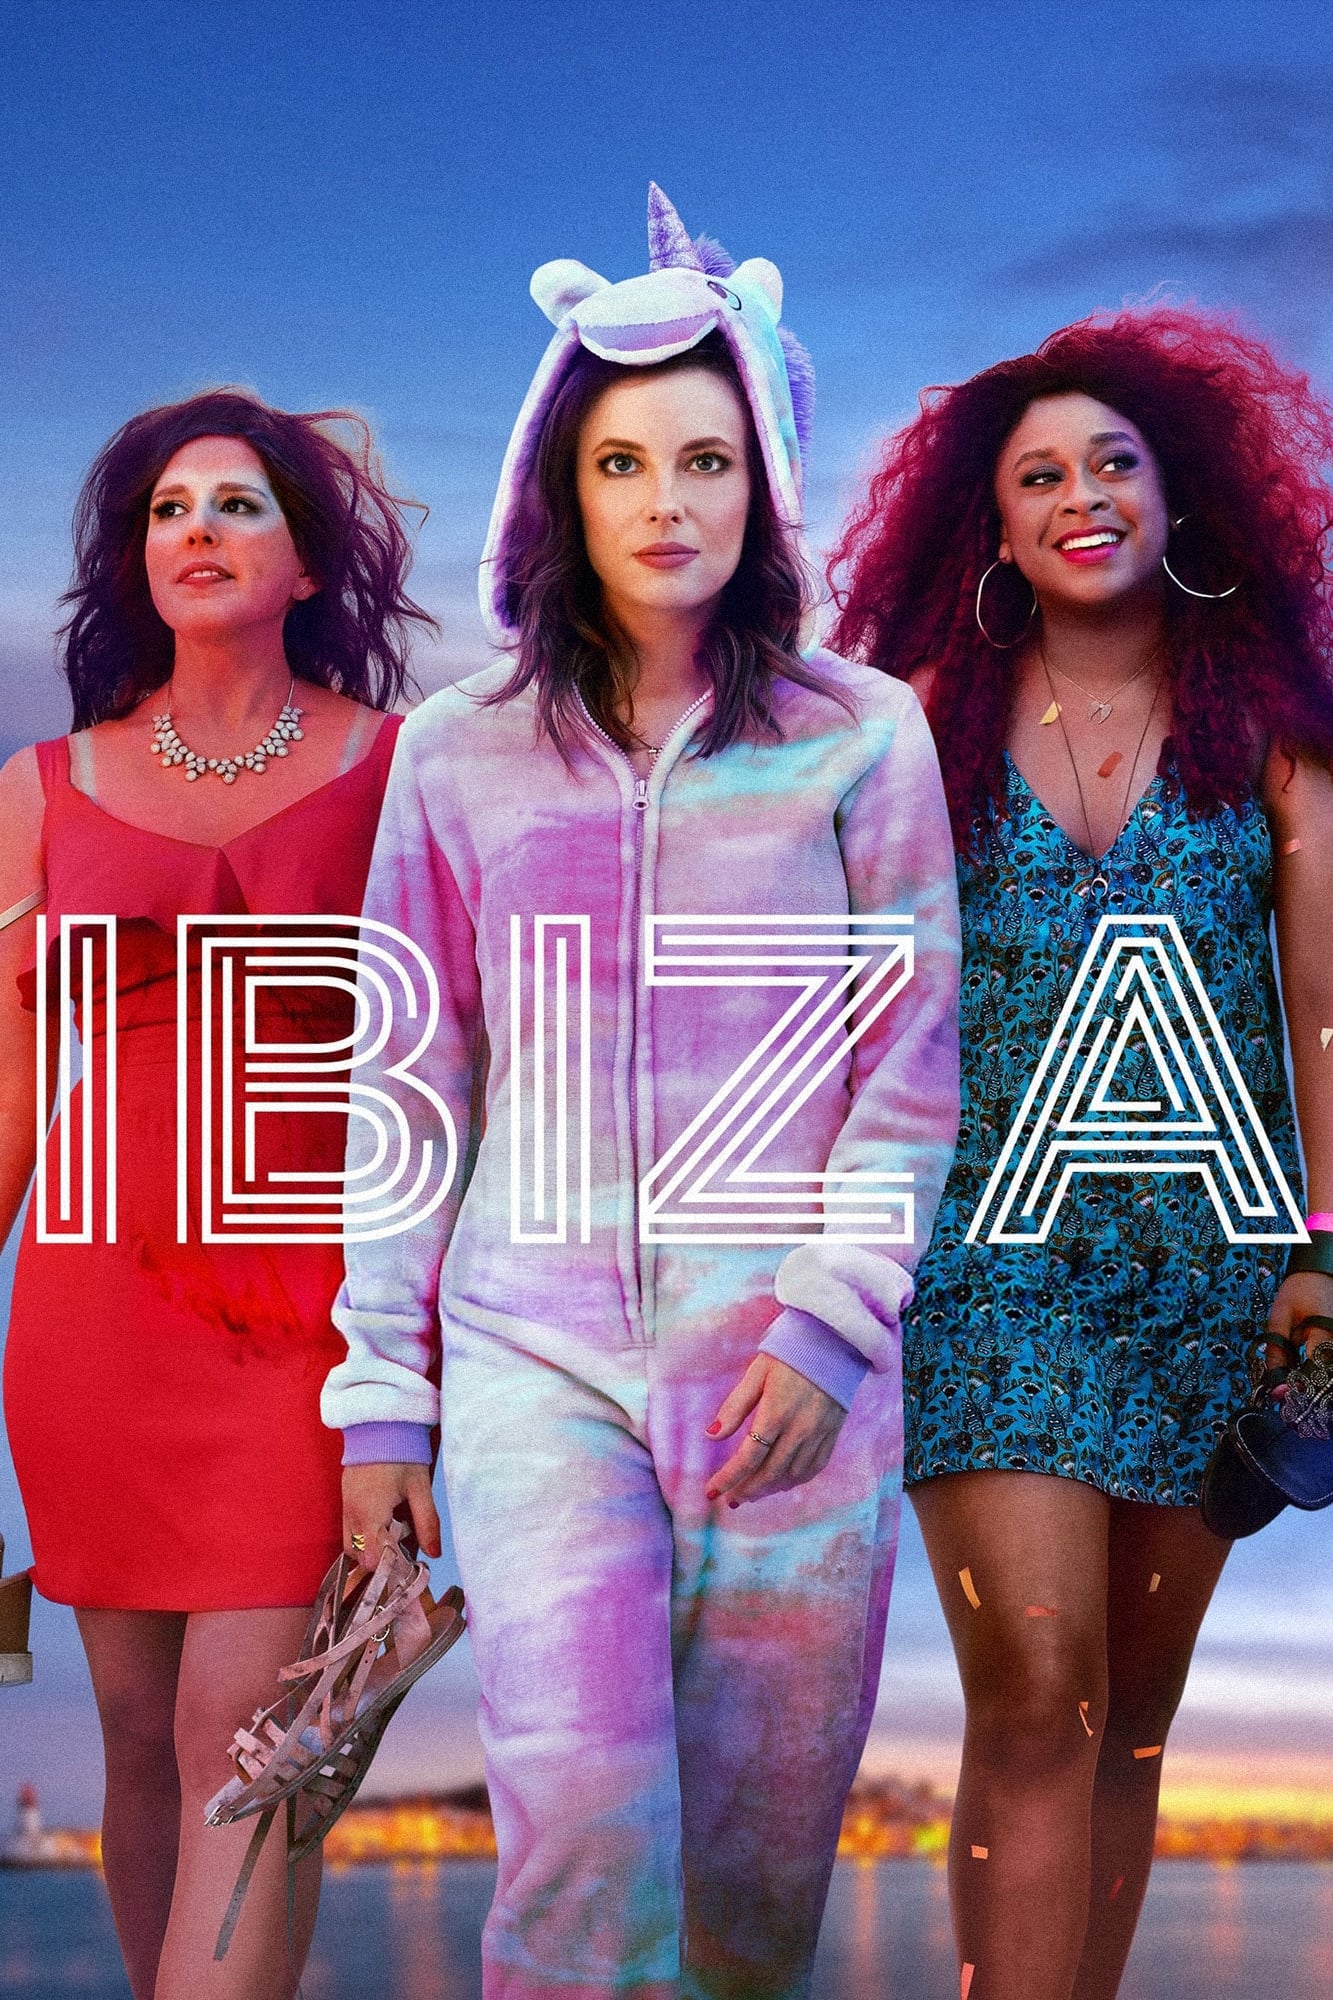 Ibiza: Tudo Pelo DJ